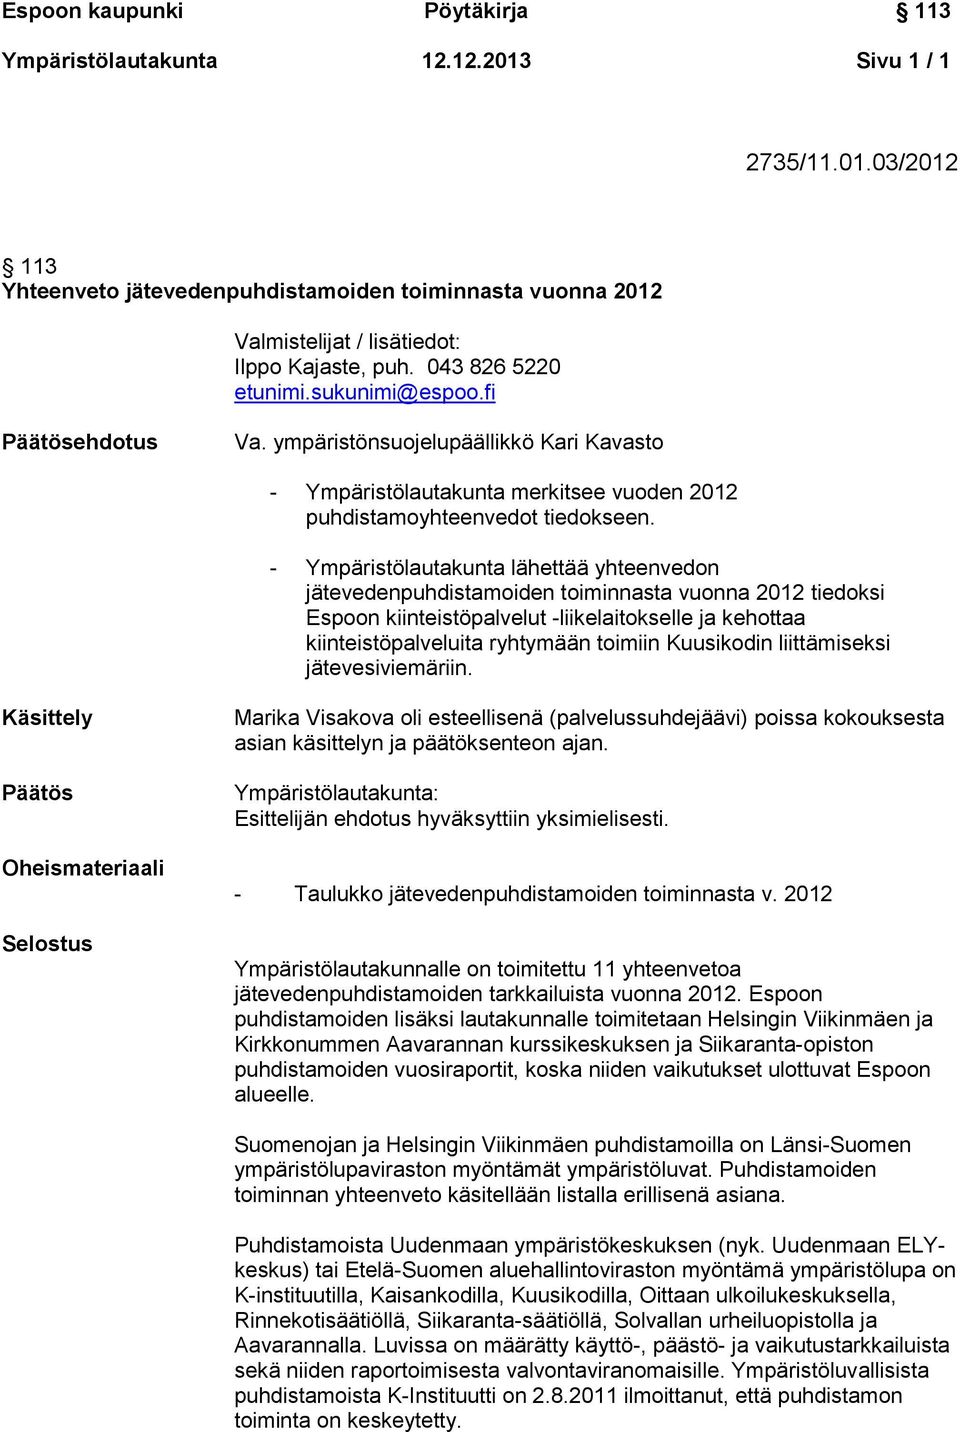 - Ympäristölautakunta lähettää yhteenvedon jätevedenpuhdistamoiden toiminnasta vuonna 2012 tiedoksi Espoon kiinteistöpalvelut -liikelaitokselle ja kehottaa kiinteistöpalveluita ryhtymään toimiin